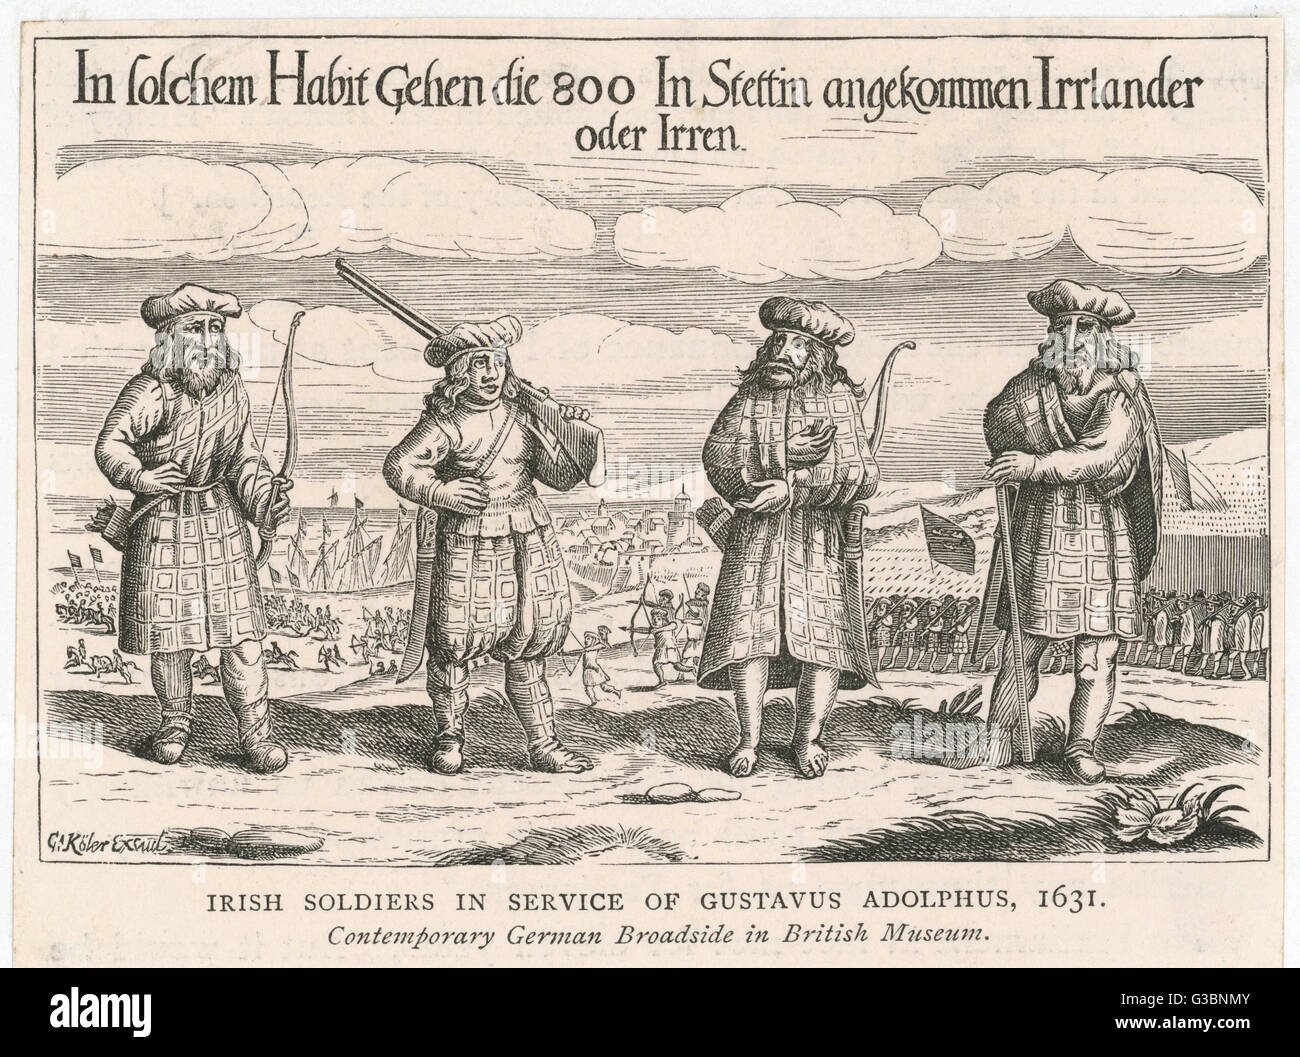 Irische Soldaten, einige mit Gewehren, teilweise mit Bögen, in den Dienst der schwedischen König, Gustavus Adolphus, während des Dreißigjährigen Krieges Datum: 1631 Stockfoto